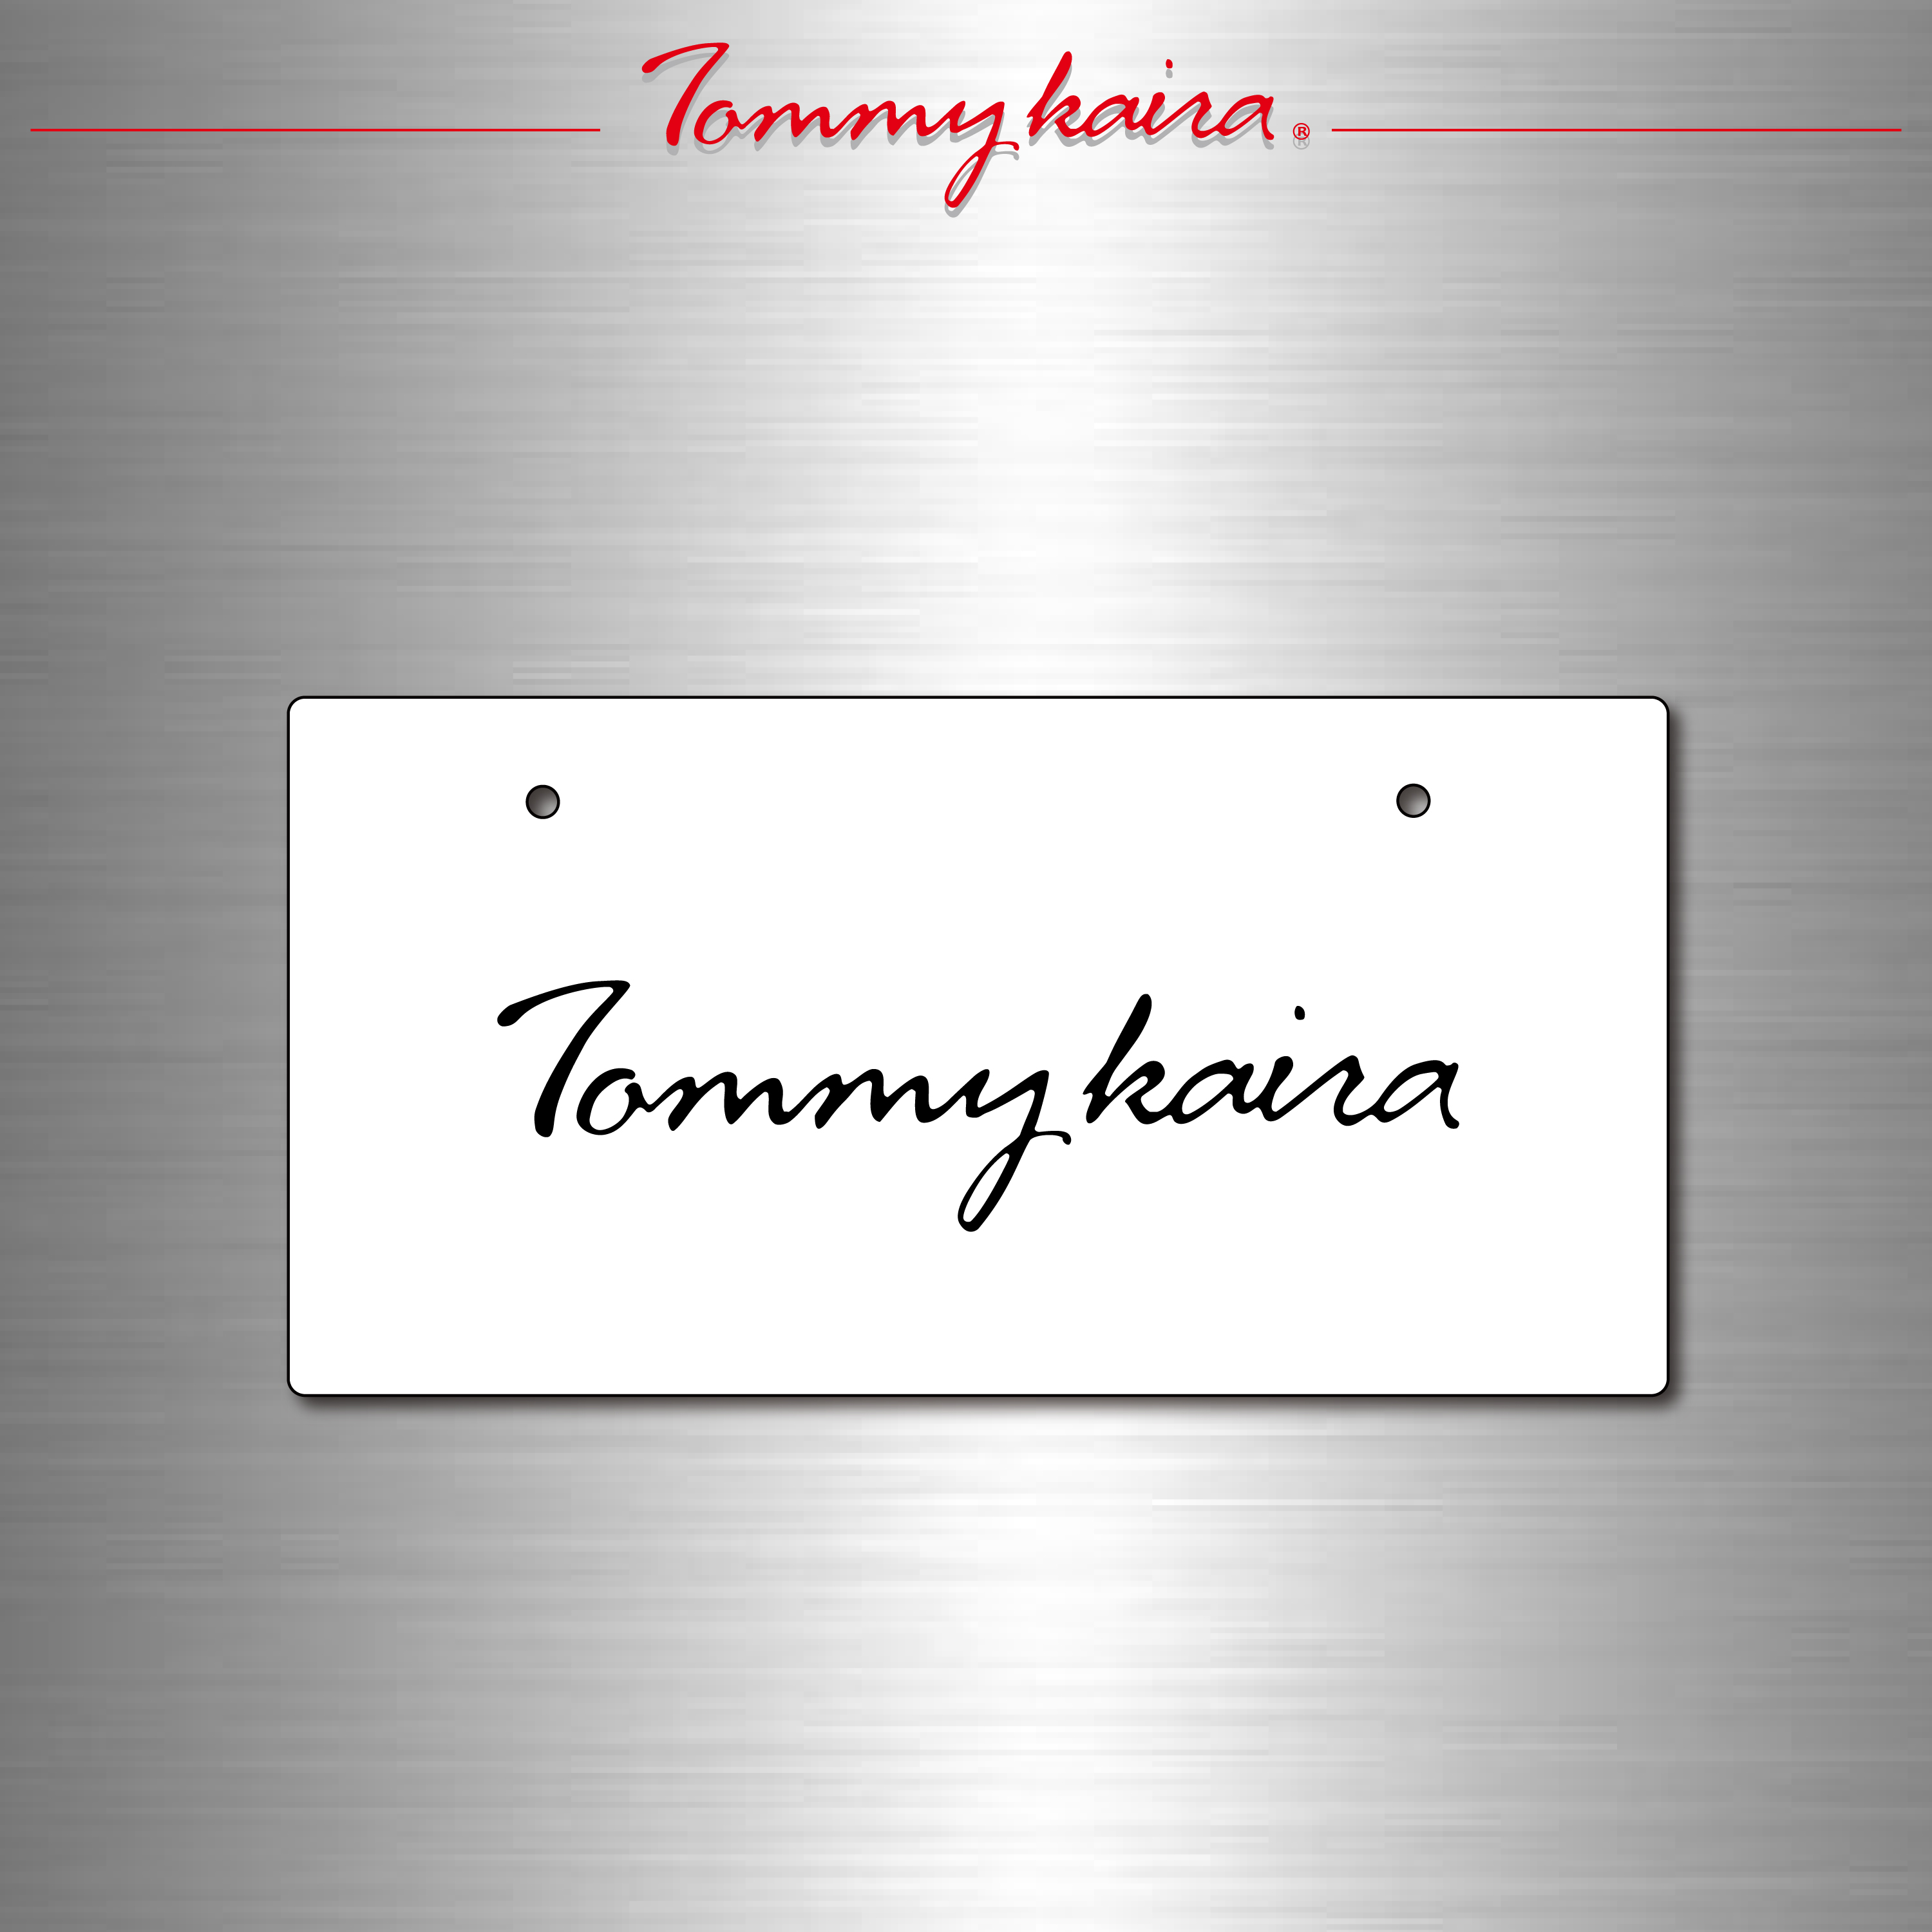 ｢Tommykaira｣化粧プレートが購入可能となりました。